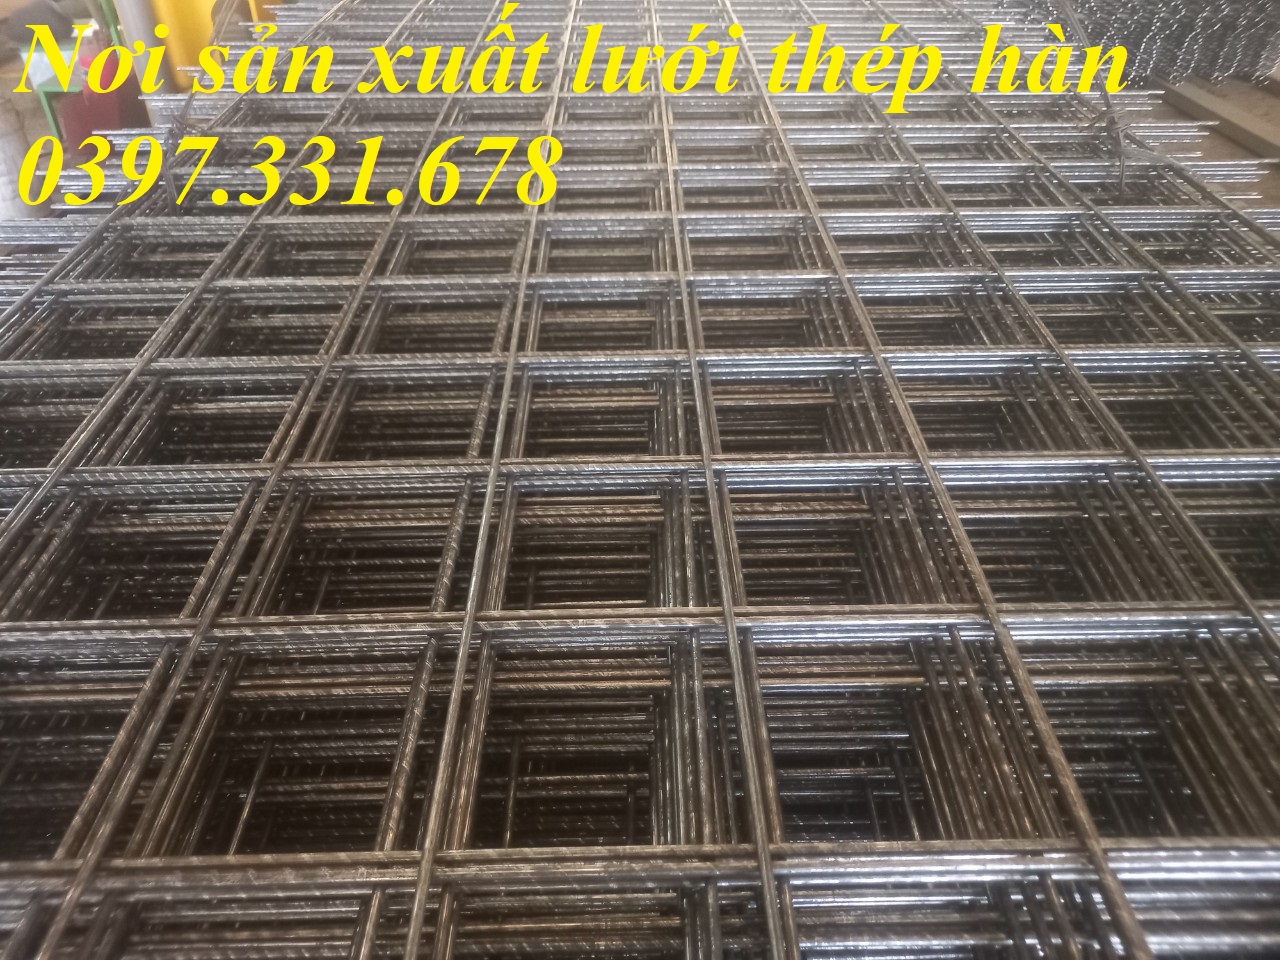 Lưới thép hàn, lưới thép hàn phi 12 A(50x50; 100x100;  150x150; 200x200...) làm theo yêu cầu